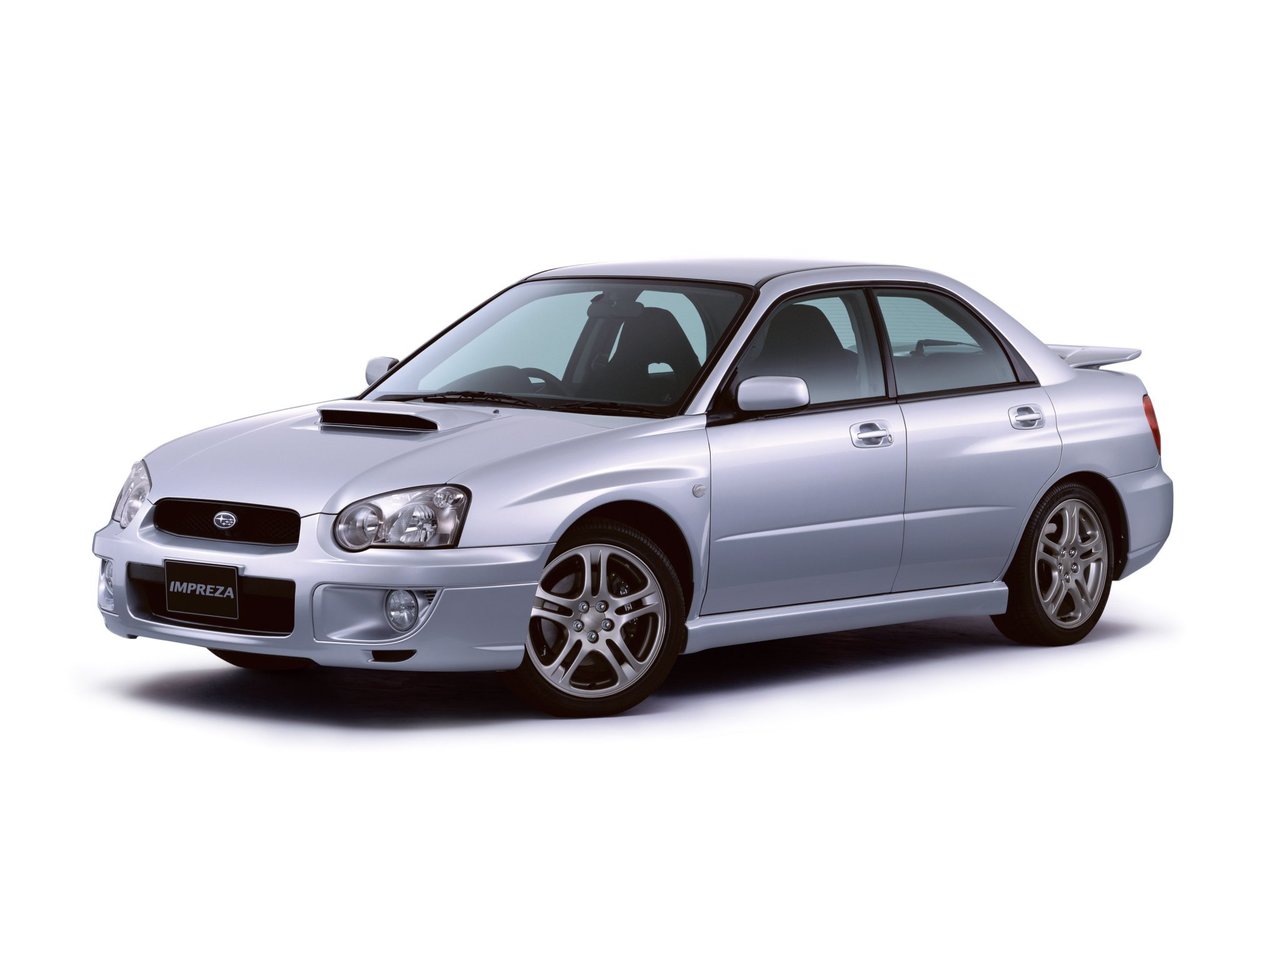 Расход газа одной комплектации седана Subaru Impreza WRX. Разница стоимости заправки газом и бензином. Автономный пробег до и после установки ГБО.